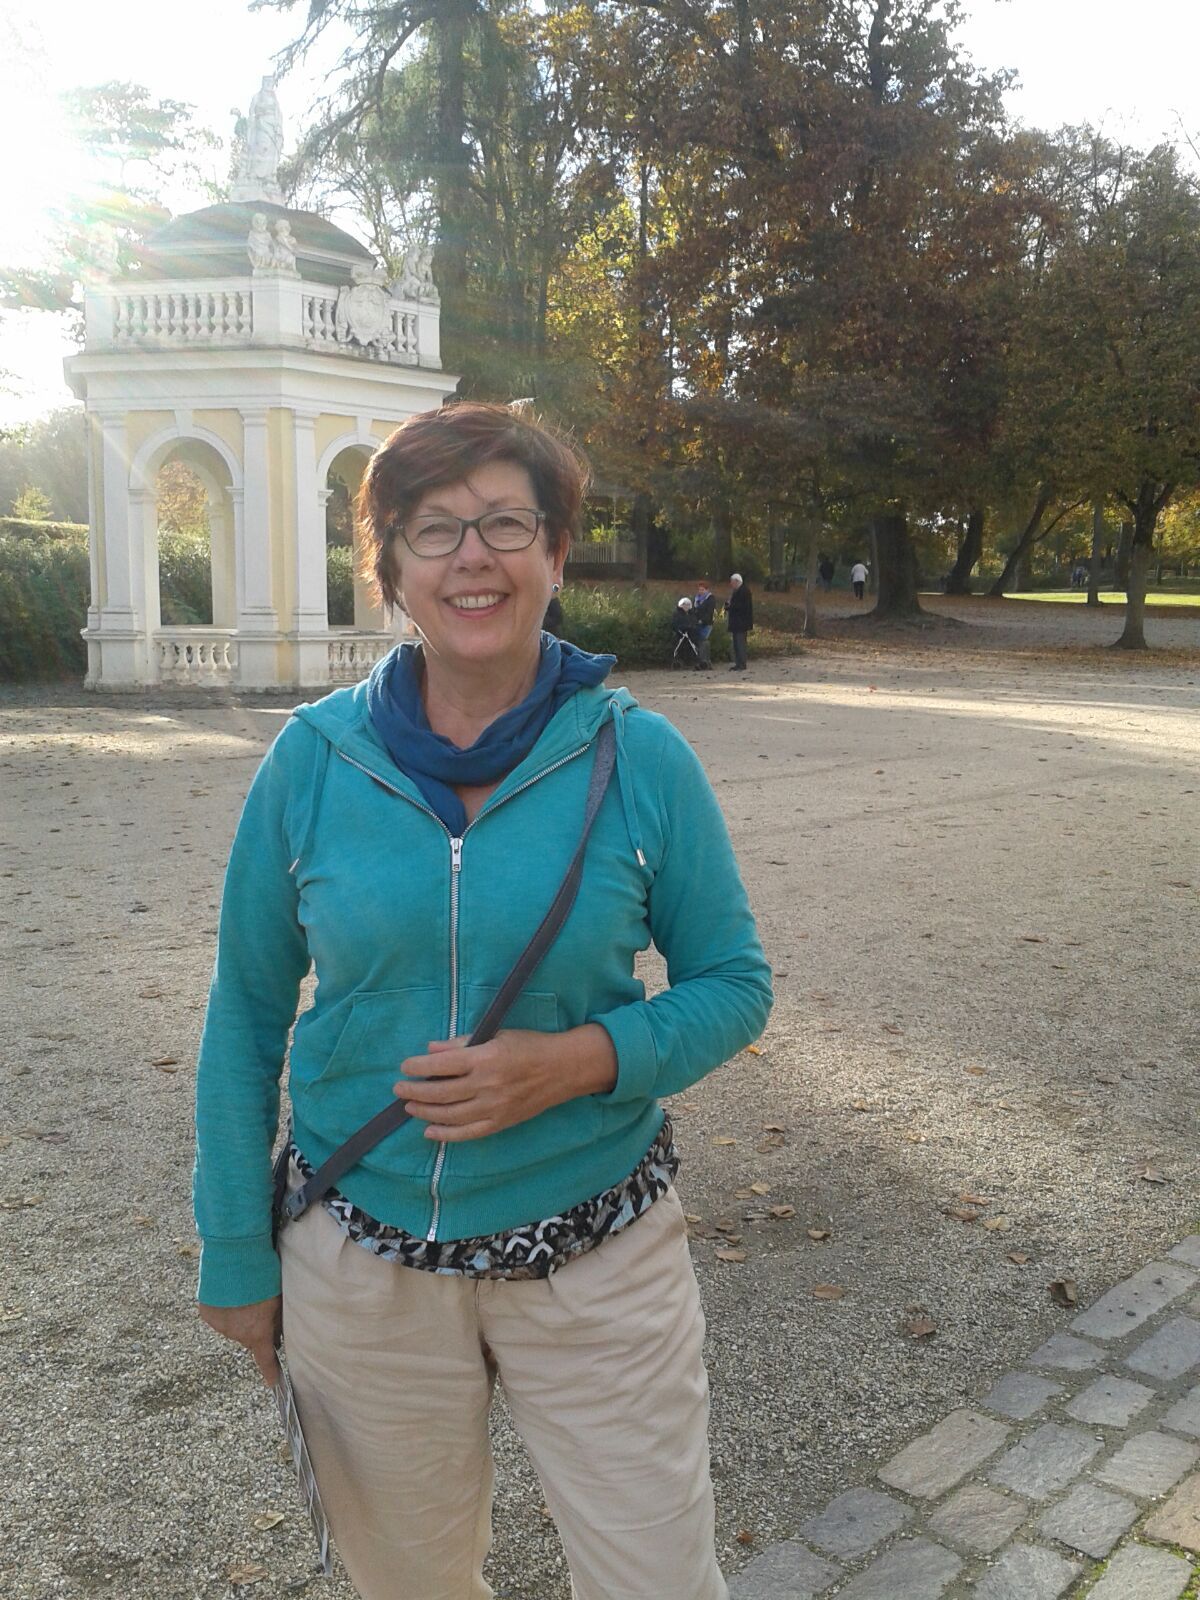 Birgitt stett mit hellblauem Pullover an einem schönen Tag im Park.